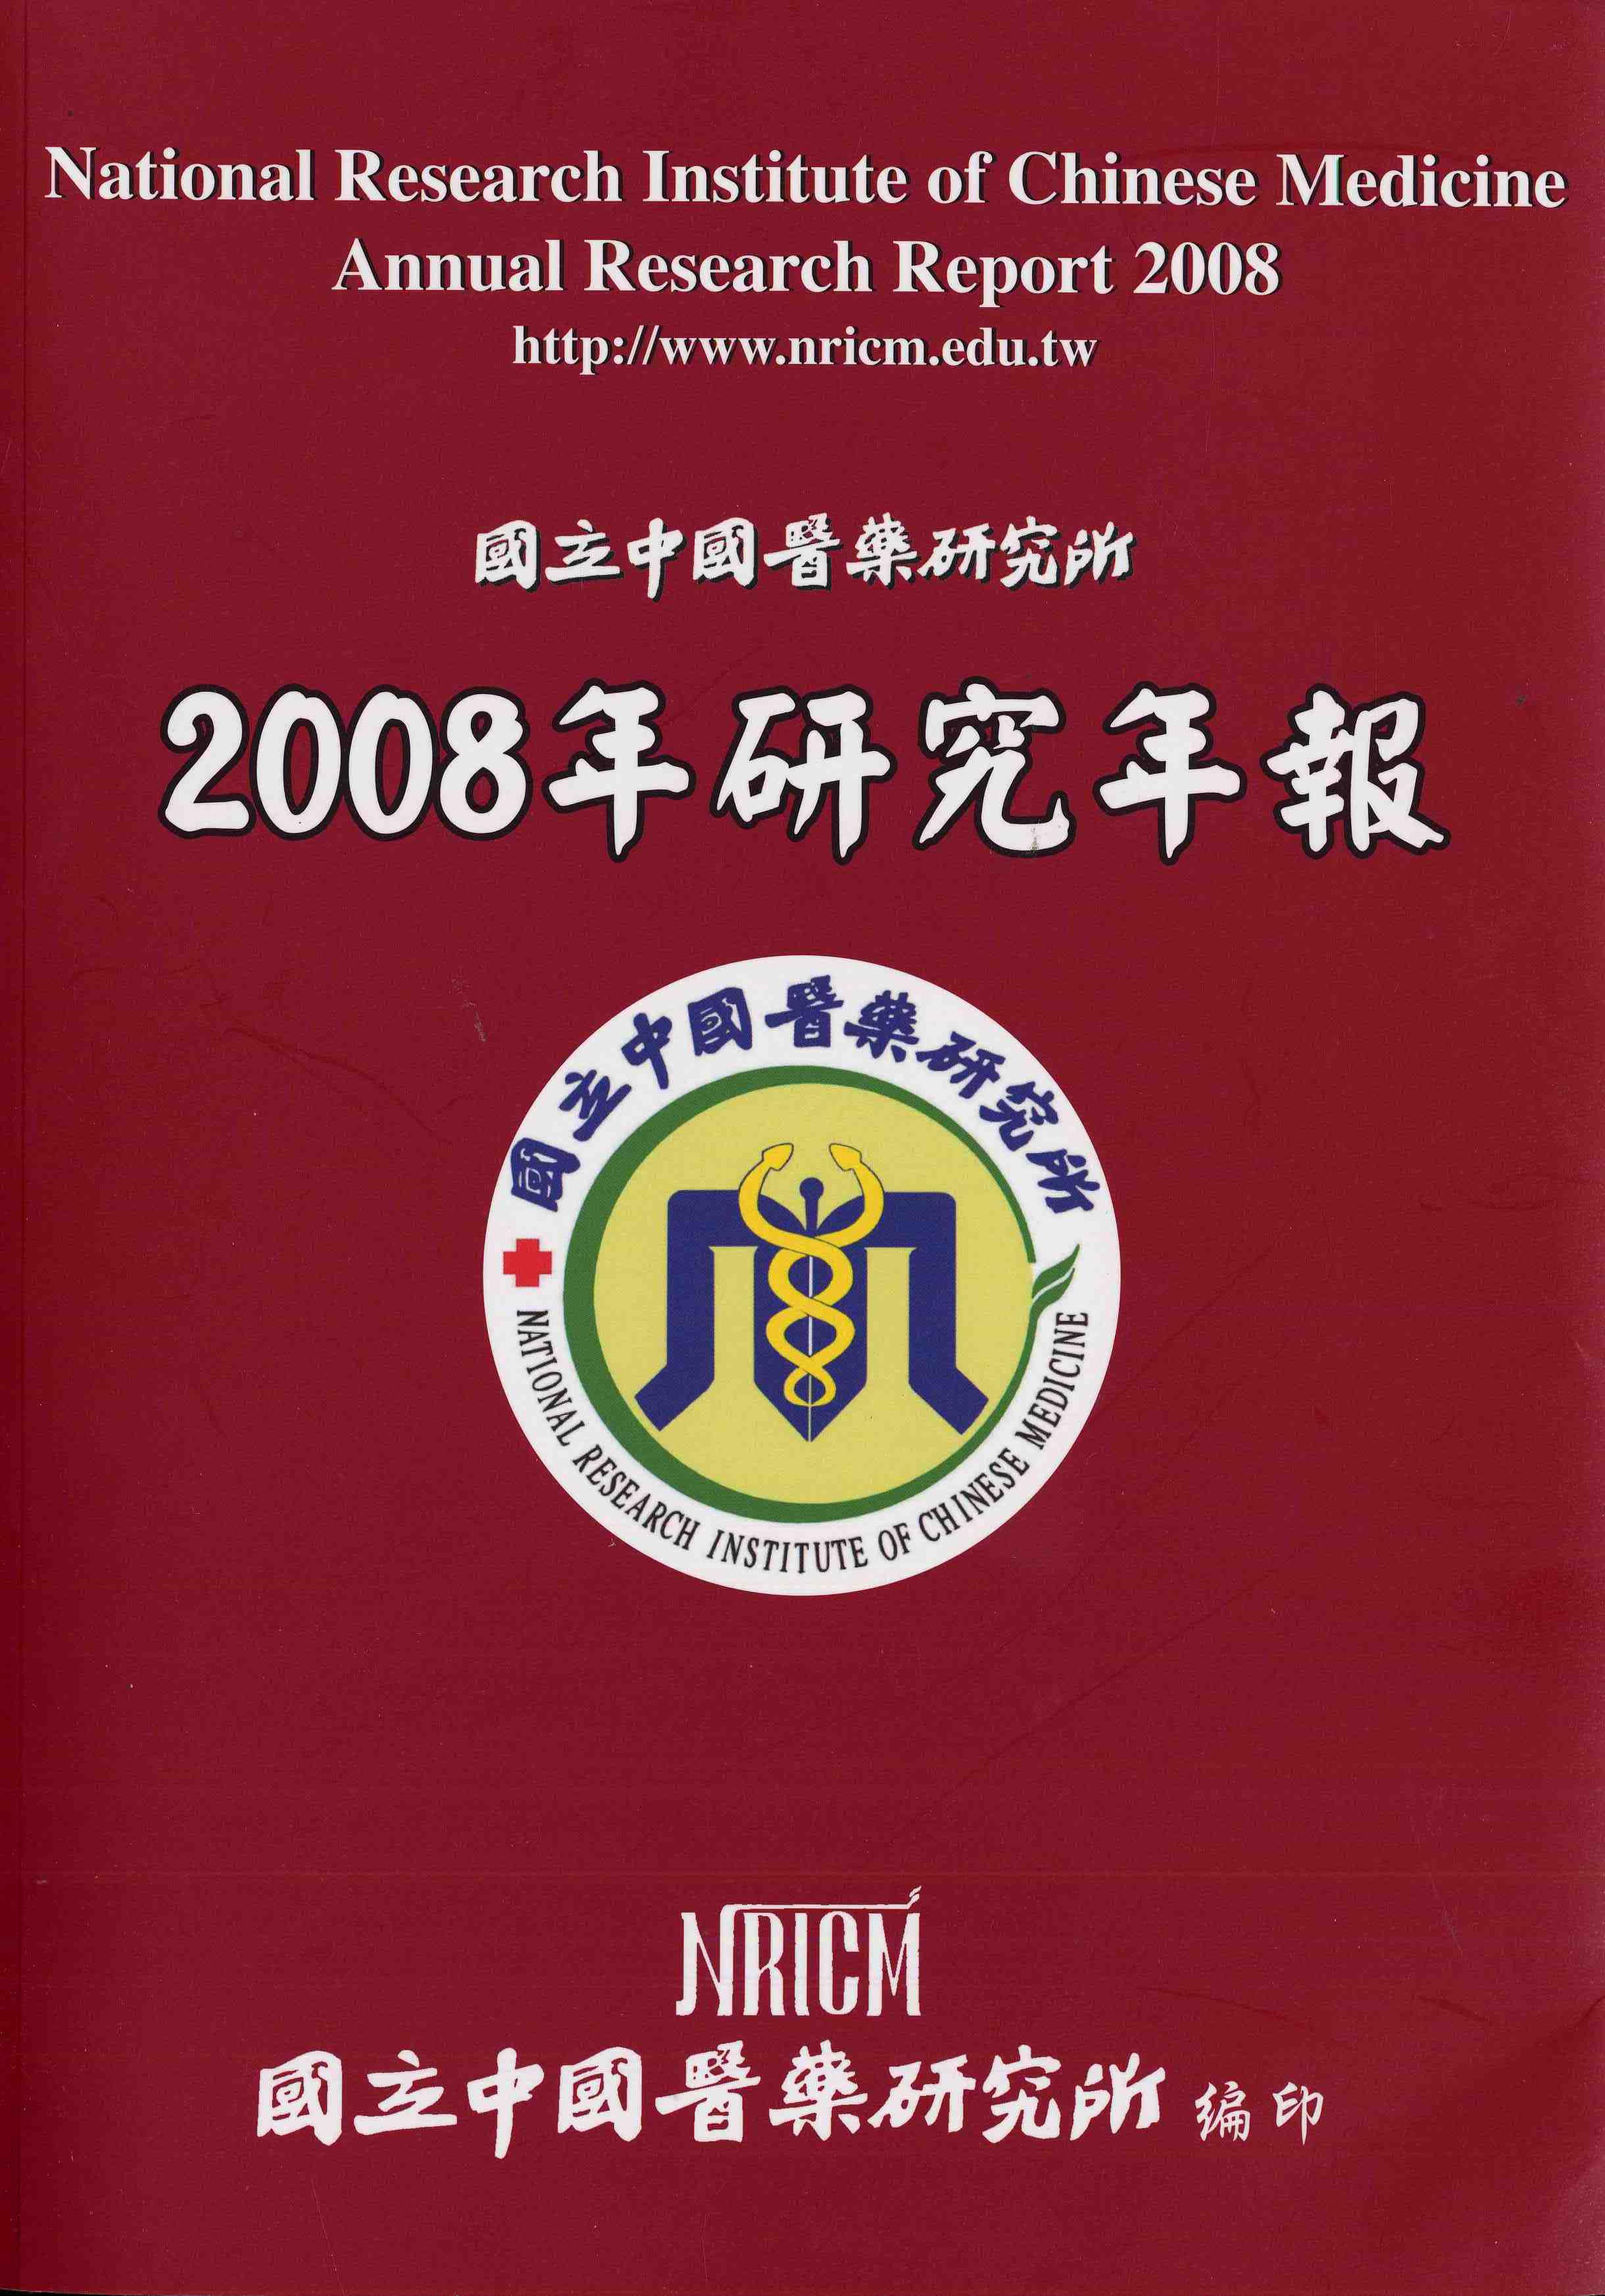 國立中國醫藥研究所2008年研究年報